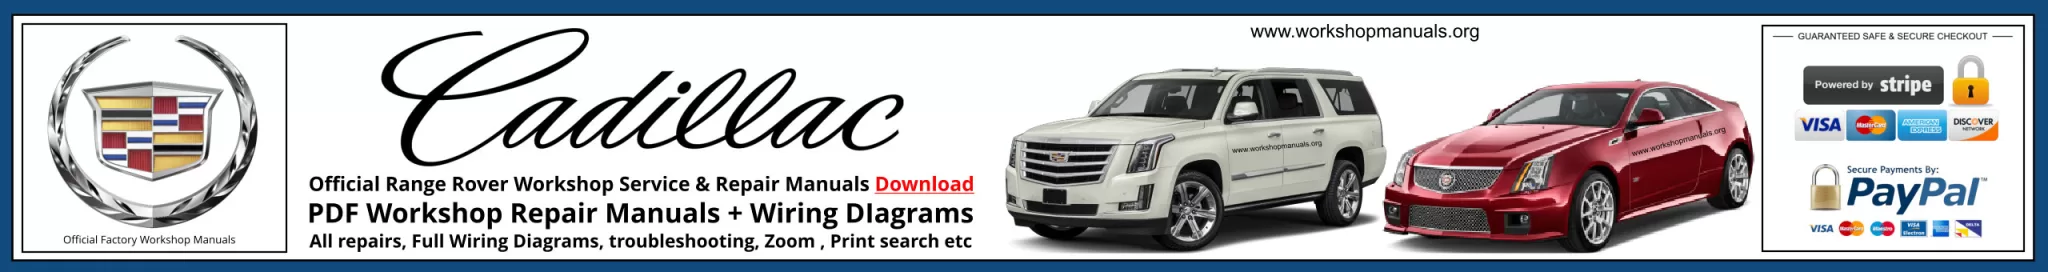 Cadillac Service Repair Workshop Manuals Download Banner